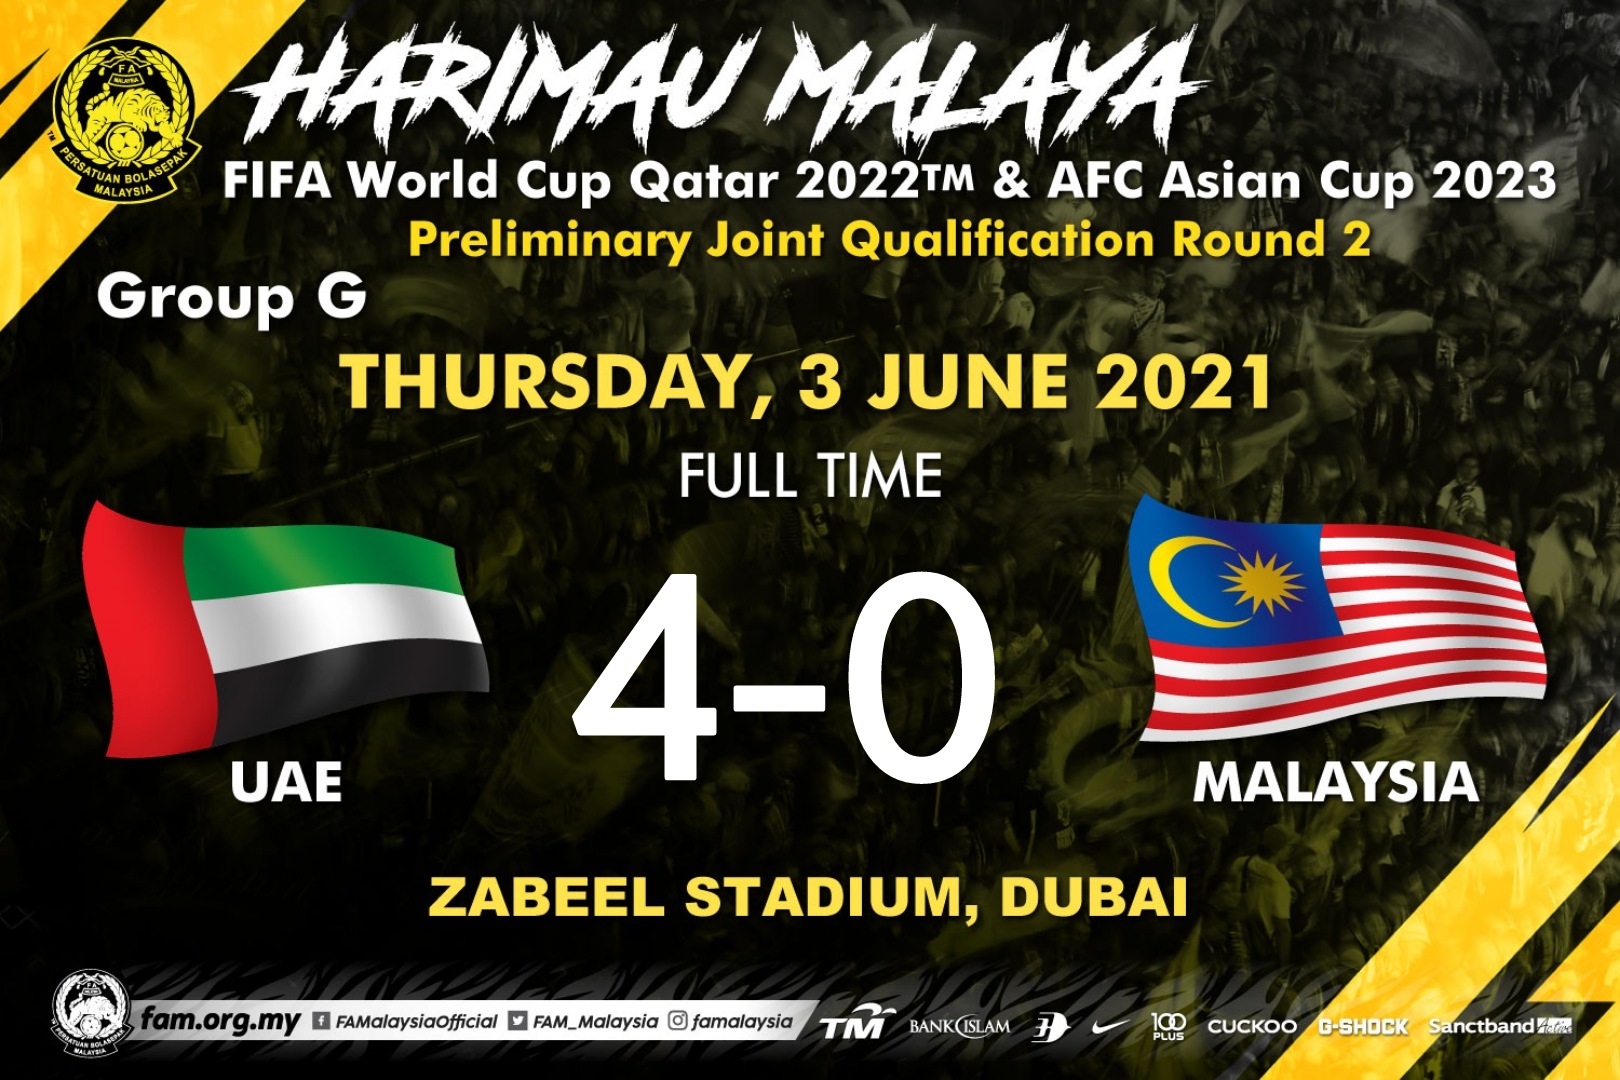 Bóng đá UAE-Malaysia: Trận đấu giữa UAE và Malaysia tại giải bóng đá châu Á đã thu hút sự chú ý của rất nhiều người yêu thích bóng đá. Với sự cạnh tranh gay gắt và những bàn thắng đẹp mắt, trận đấu này là một trong những trận đấu đáng xem nhất của giải đấu. Hãy cùng đón xem và cảm nhận tinh thần thể thao đầy kịch tính trong trận đấu này.